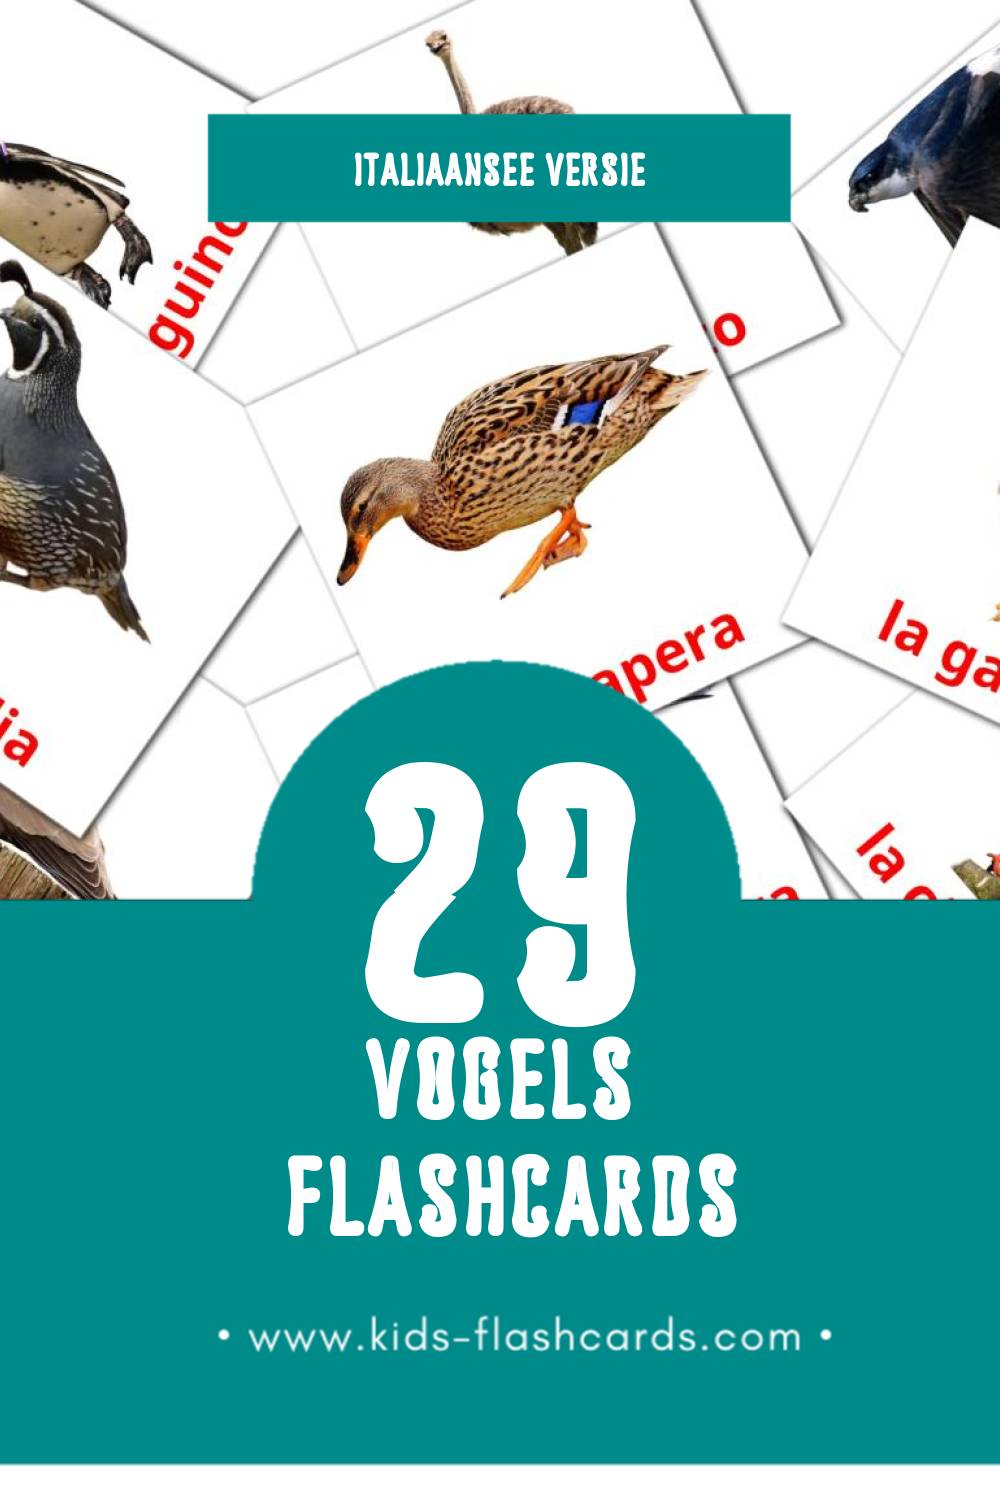 Visuele Uccelli Flashcards voor Kleuters (29 kaarten in het Italiaanse)